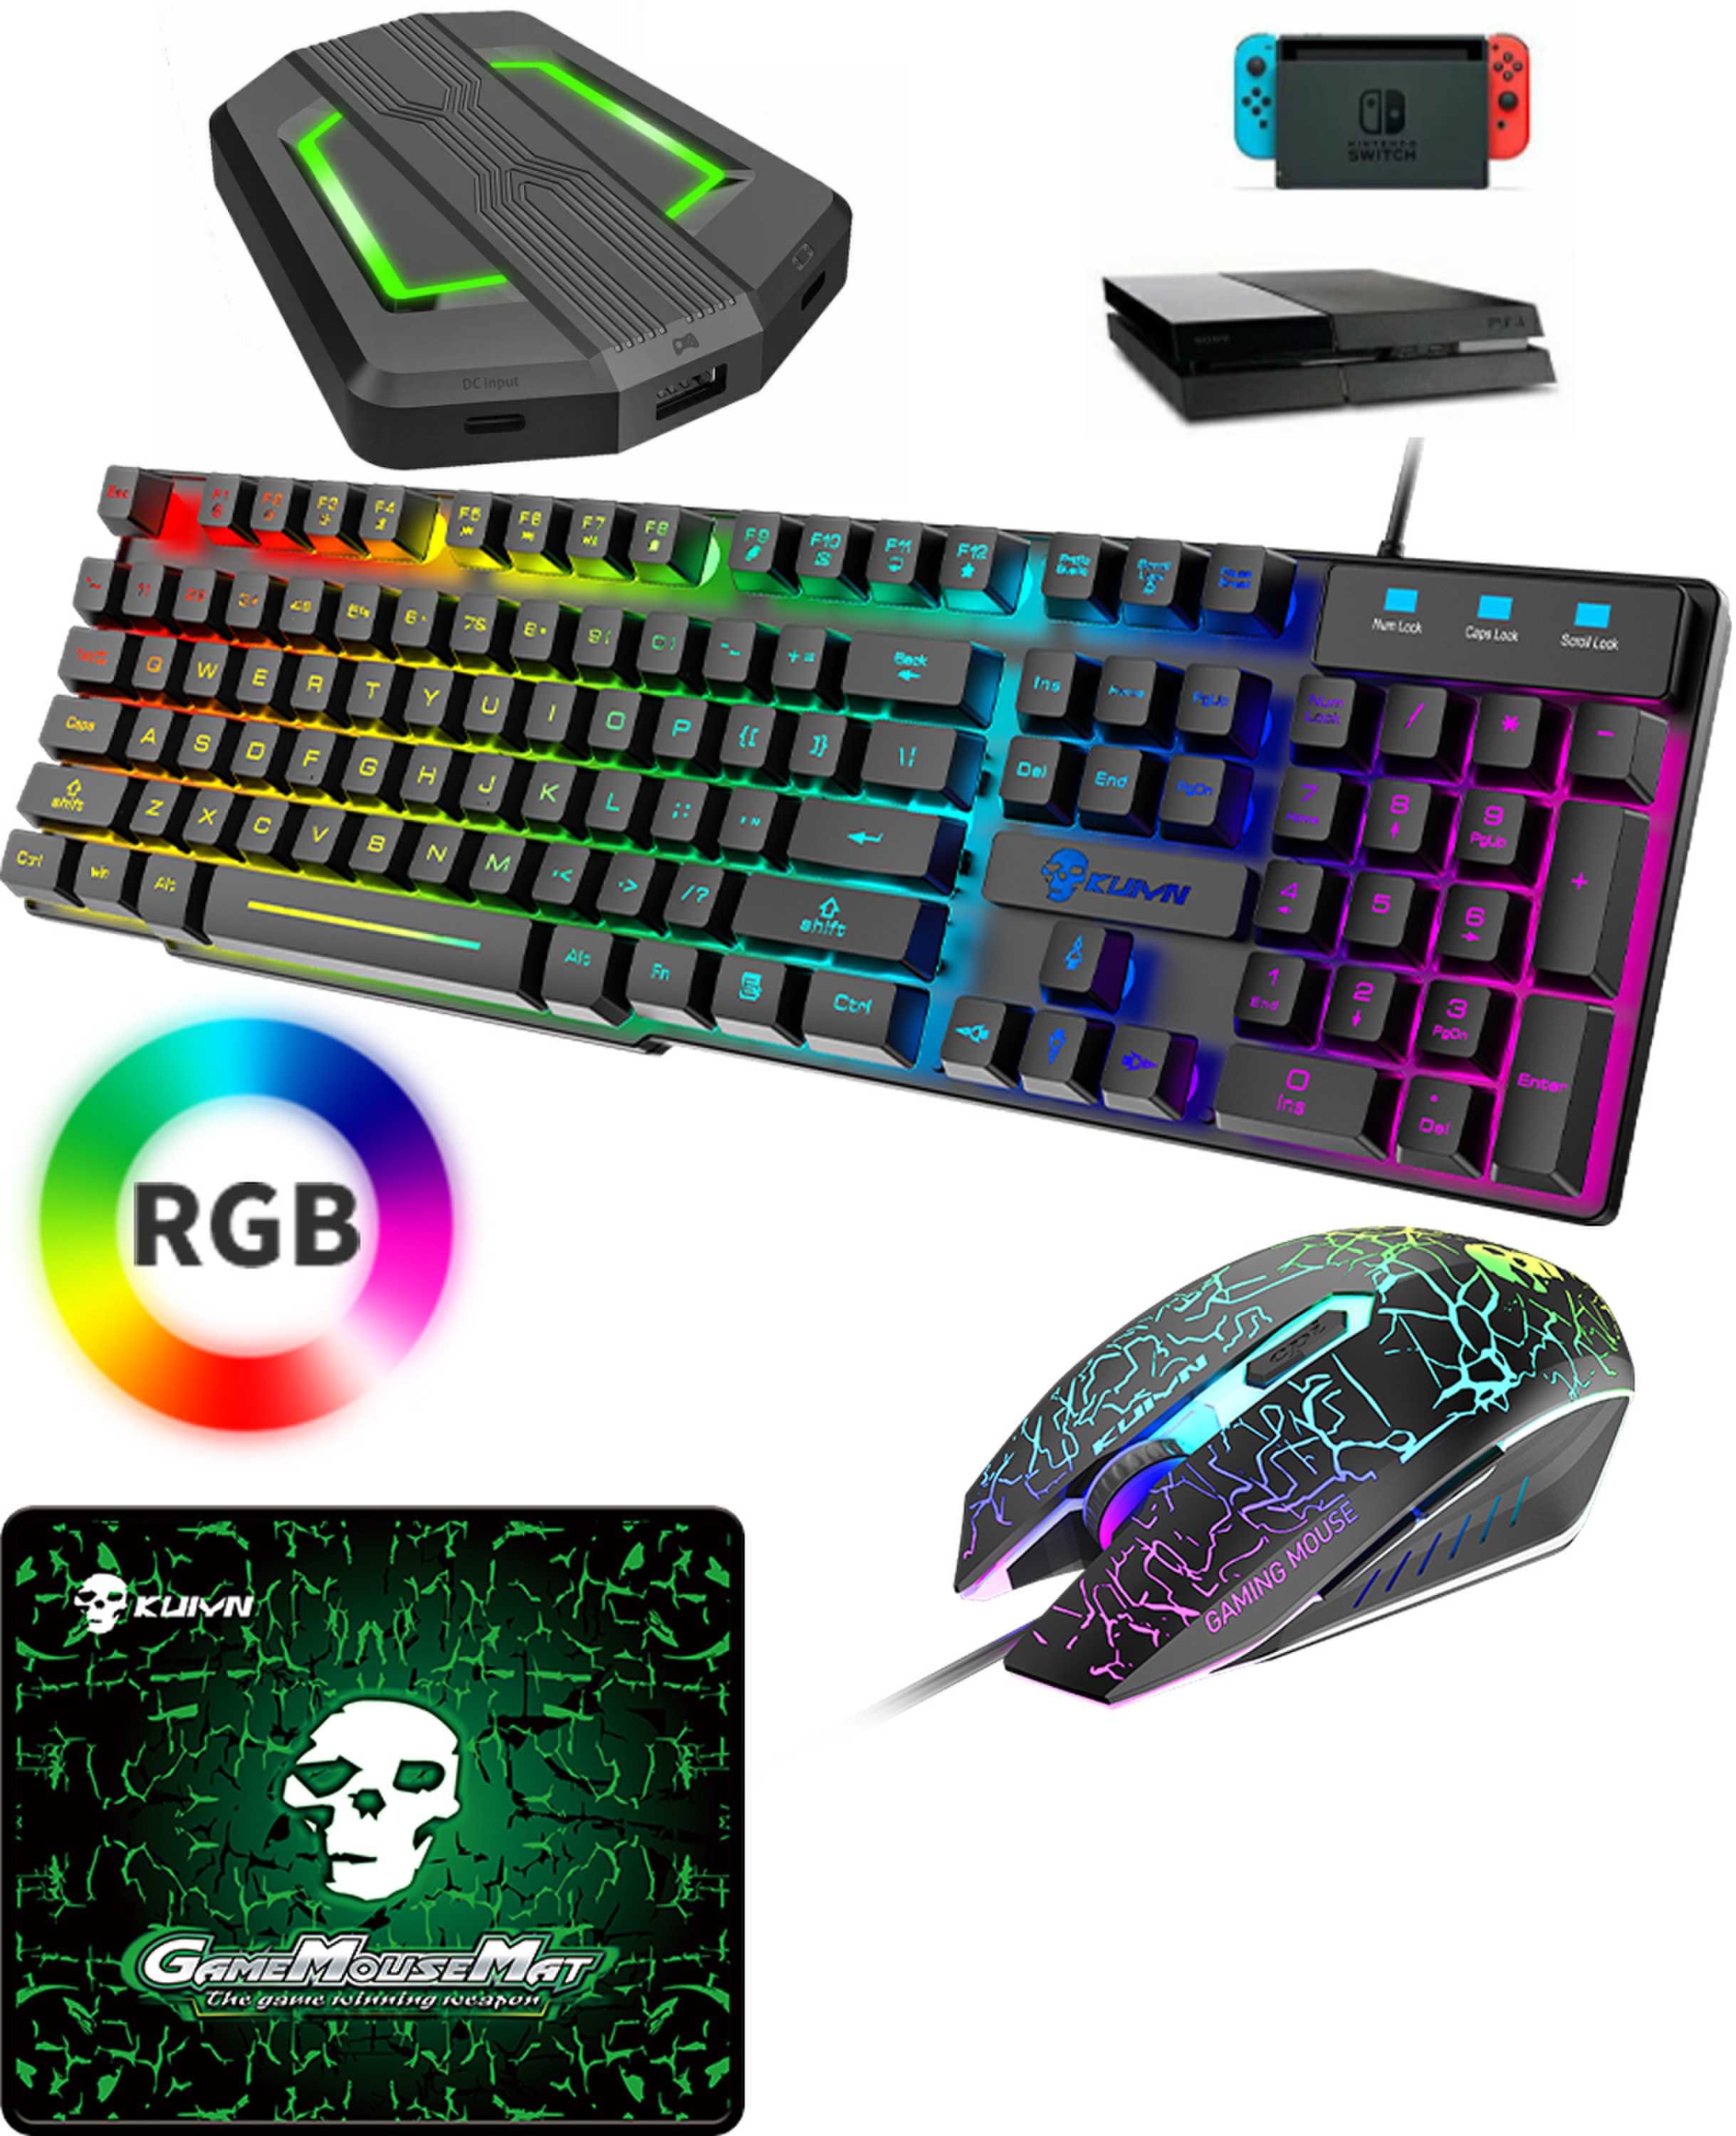 ゲーミングキーボード マウス セットコンバータ付き 高耐久 RGB 多種ライトモード USB有線 防水多機能 マルチメディ…